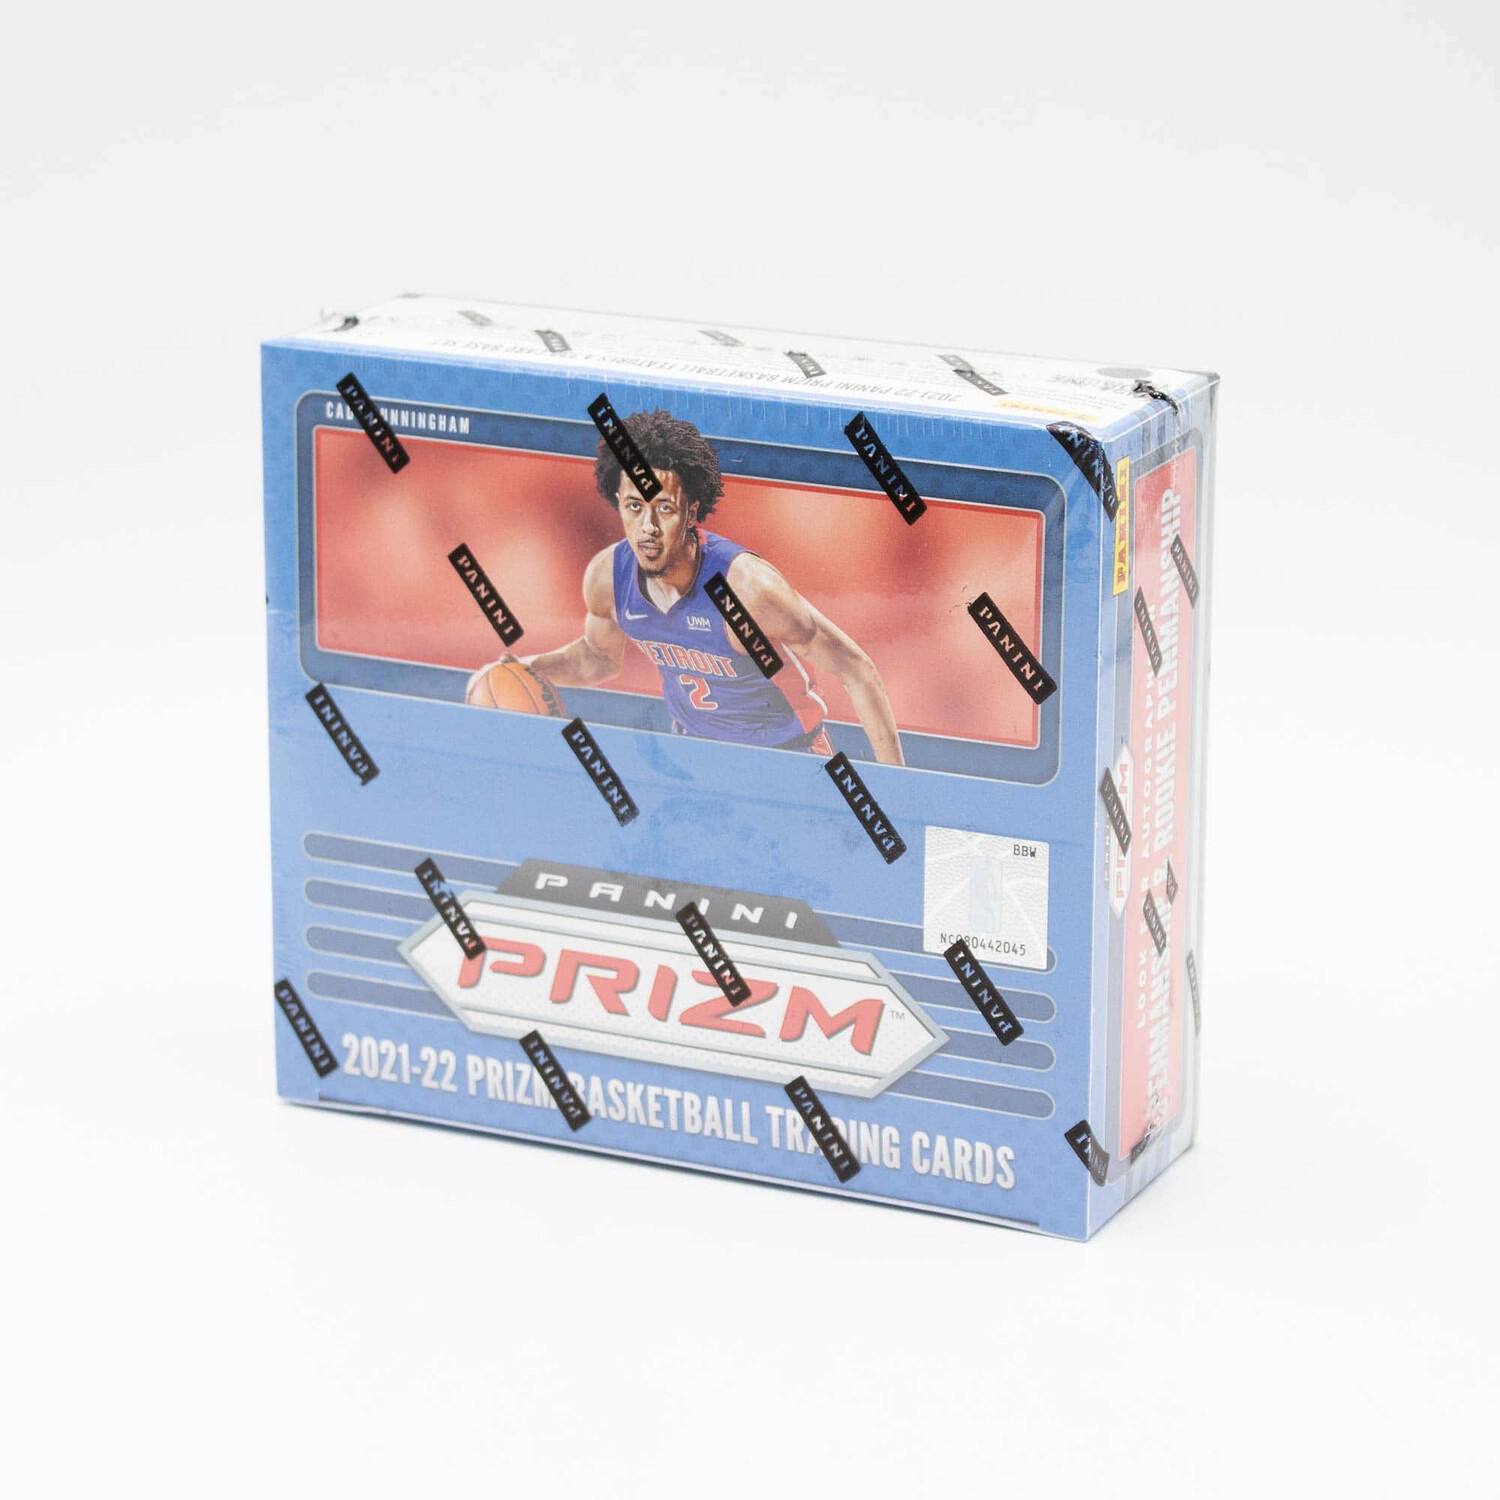 2021/22 Panini Prizm Basketball Cards Retail Box